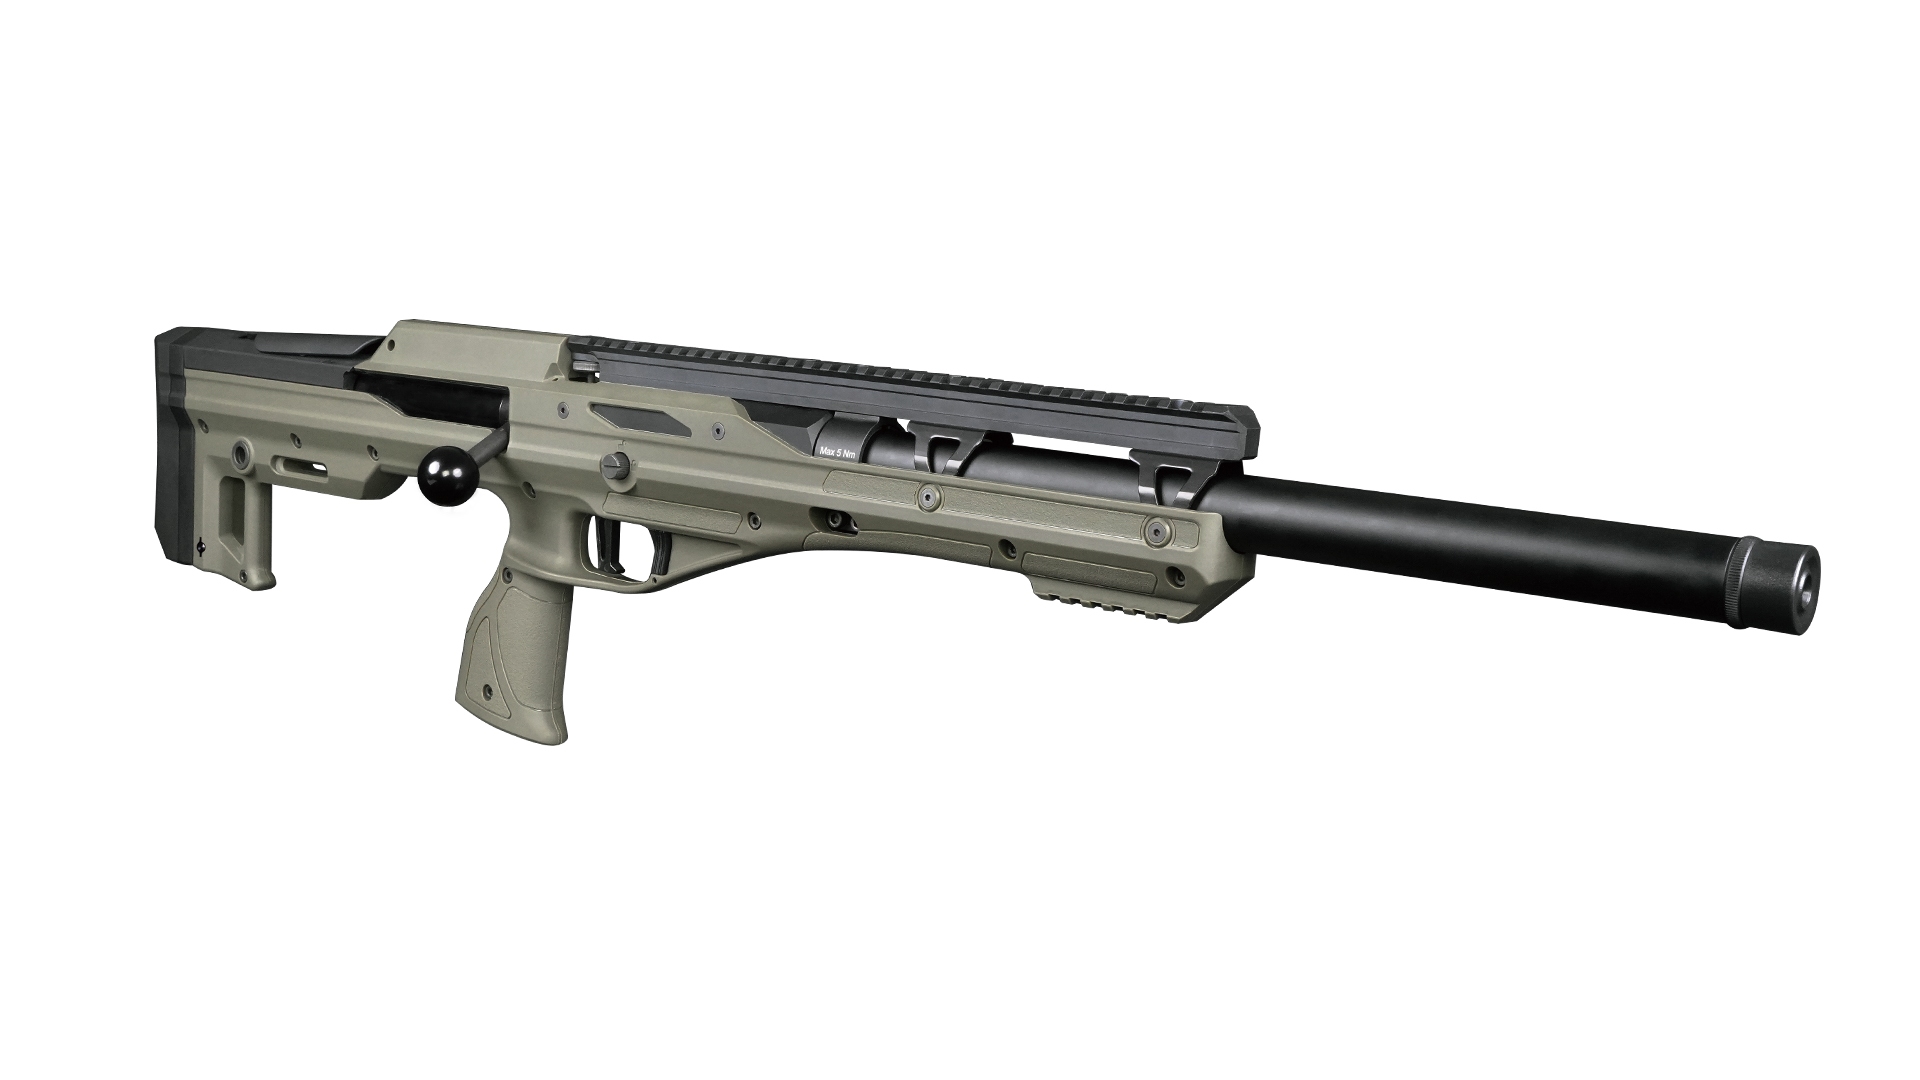 CXP-Tomahawk Bullpup Spring Sniper Rifle